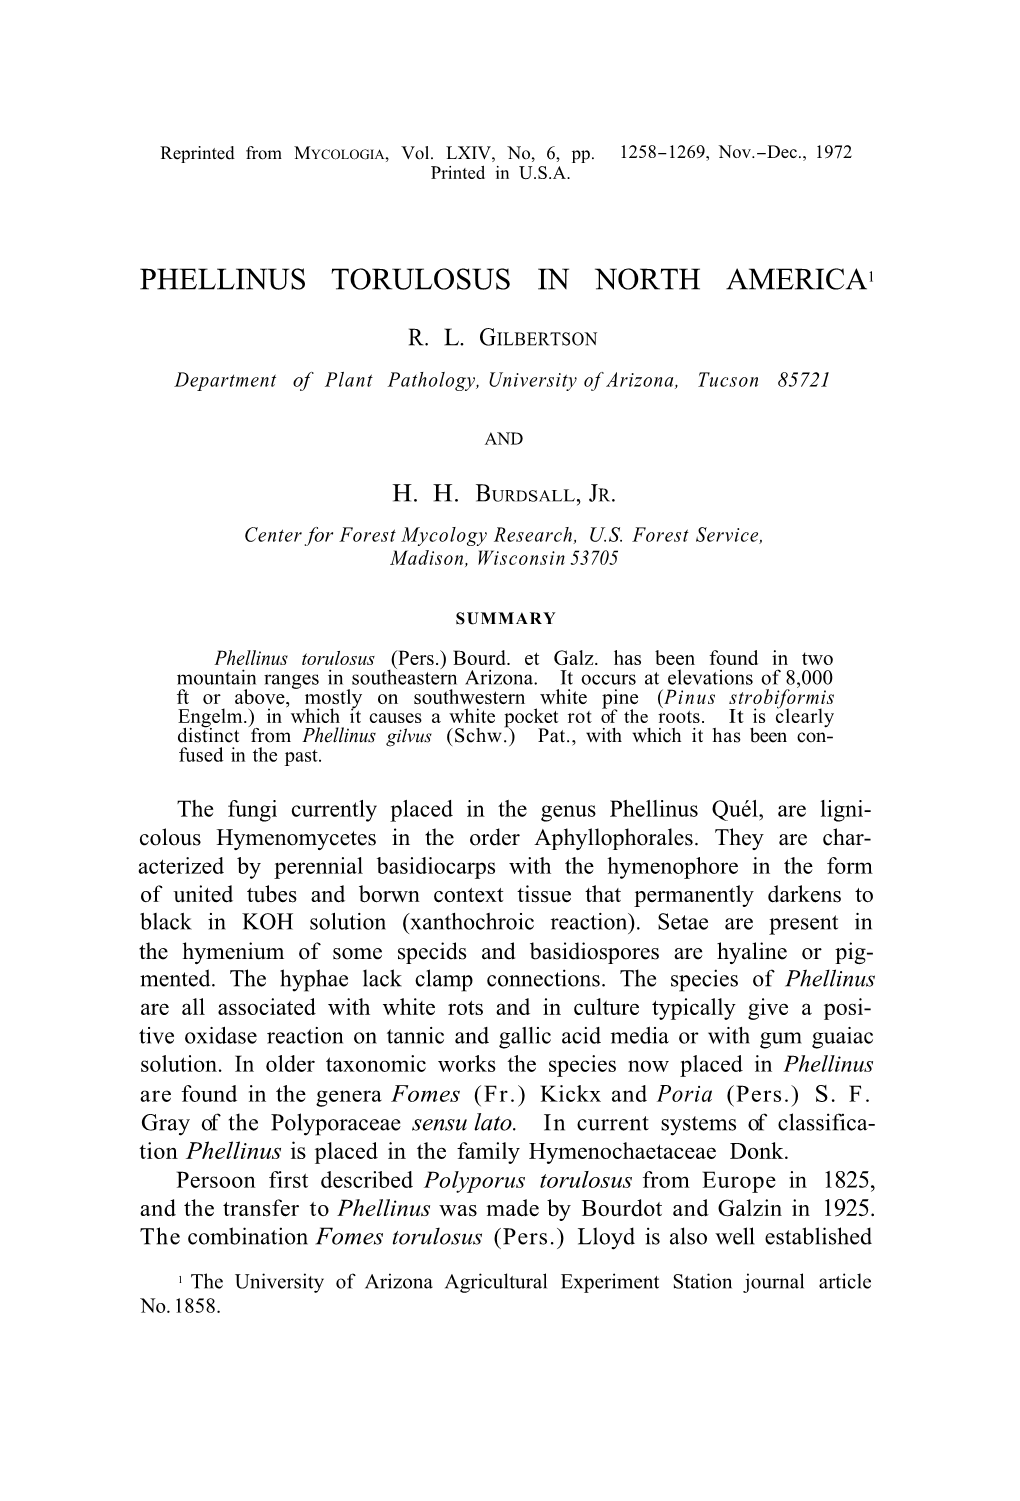 Phellinus Torulosus in North America1